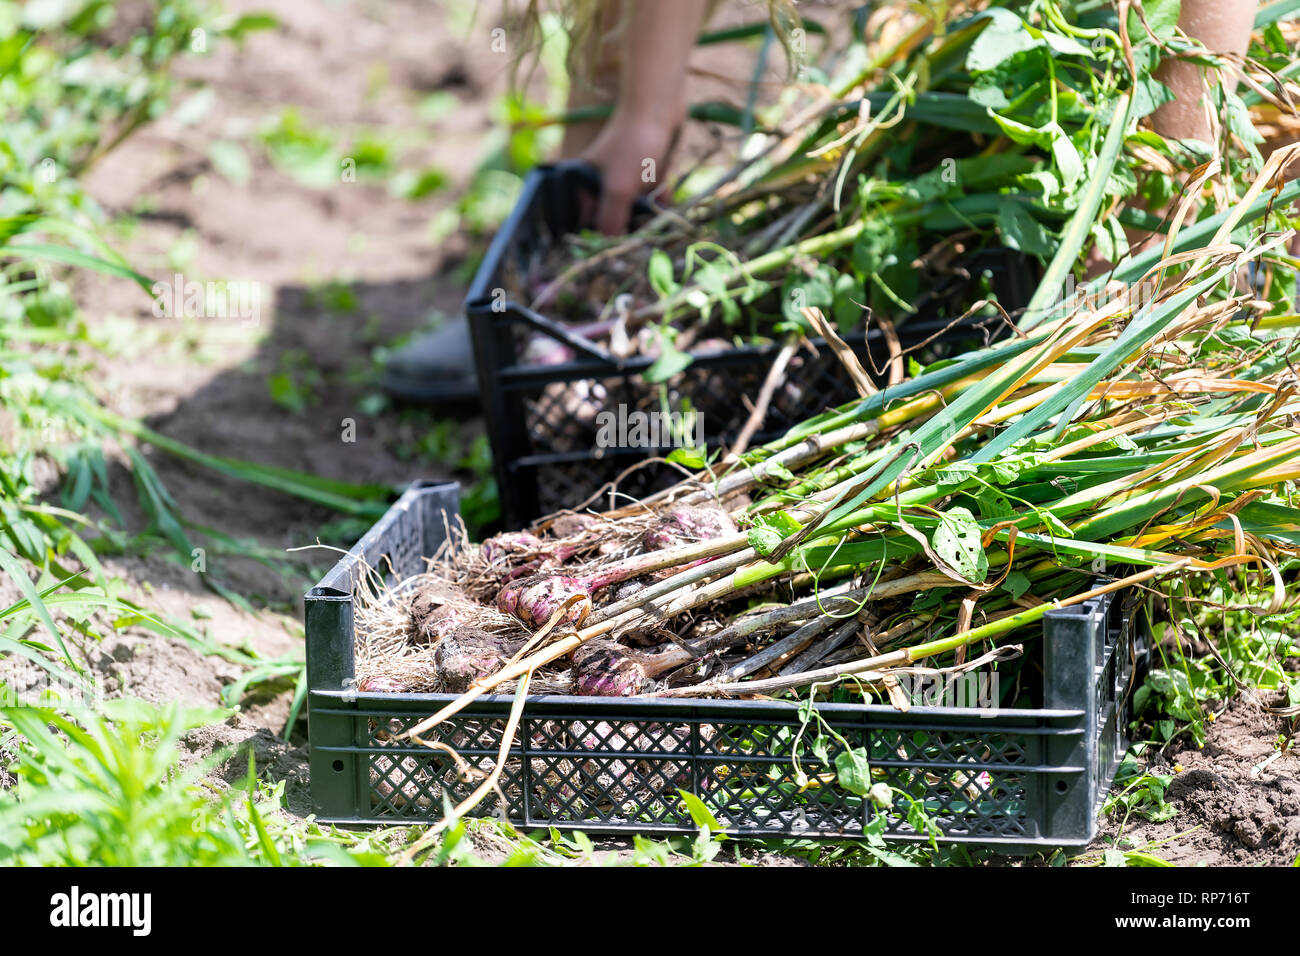 Donna giovane agricoltore raccolta bulbo aglio in una fattoria o in giardino ponendo le verdure in casse cestelli Foto Stock